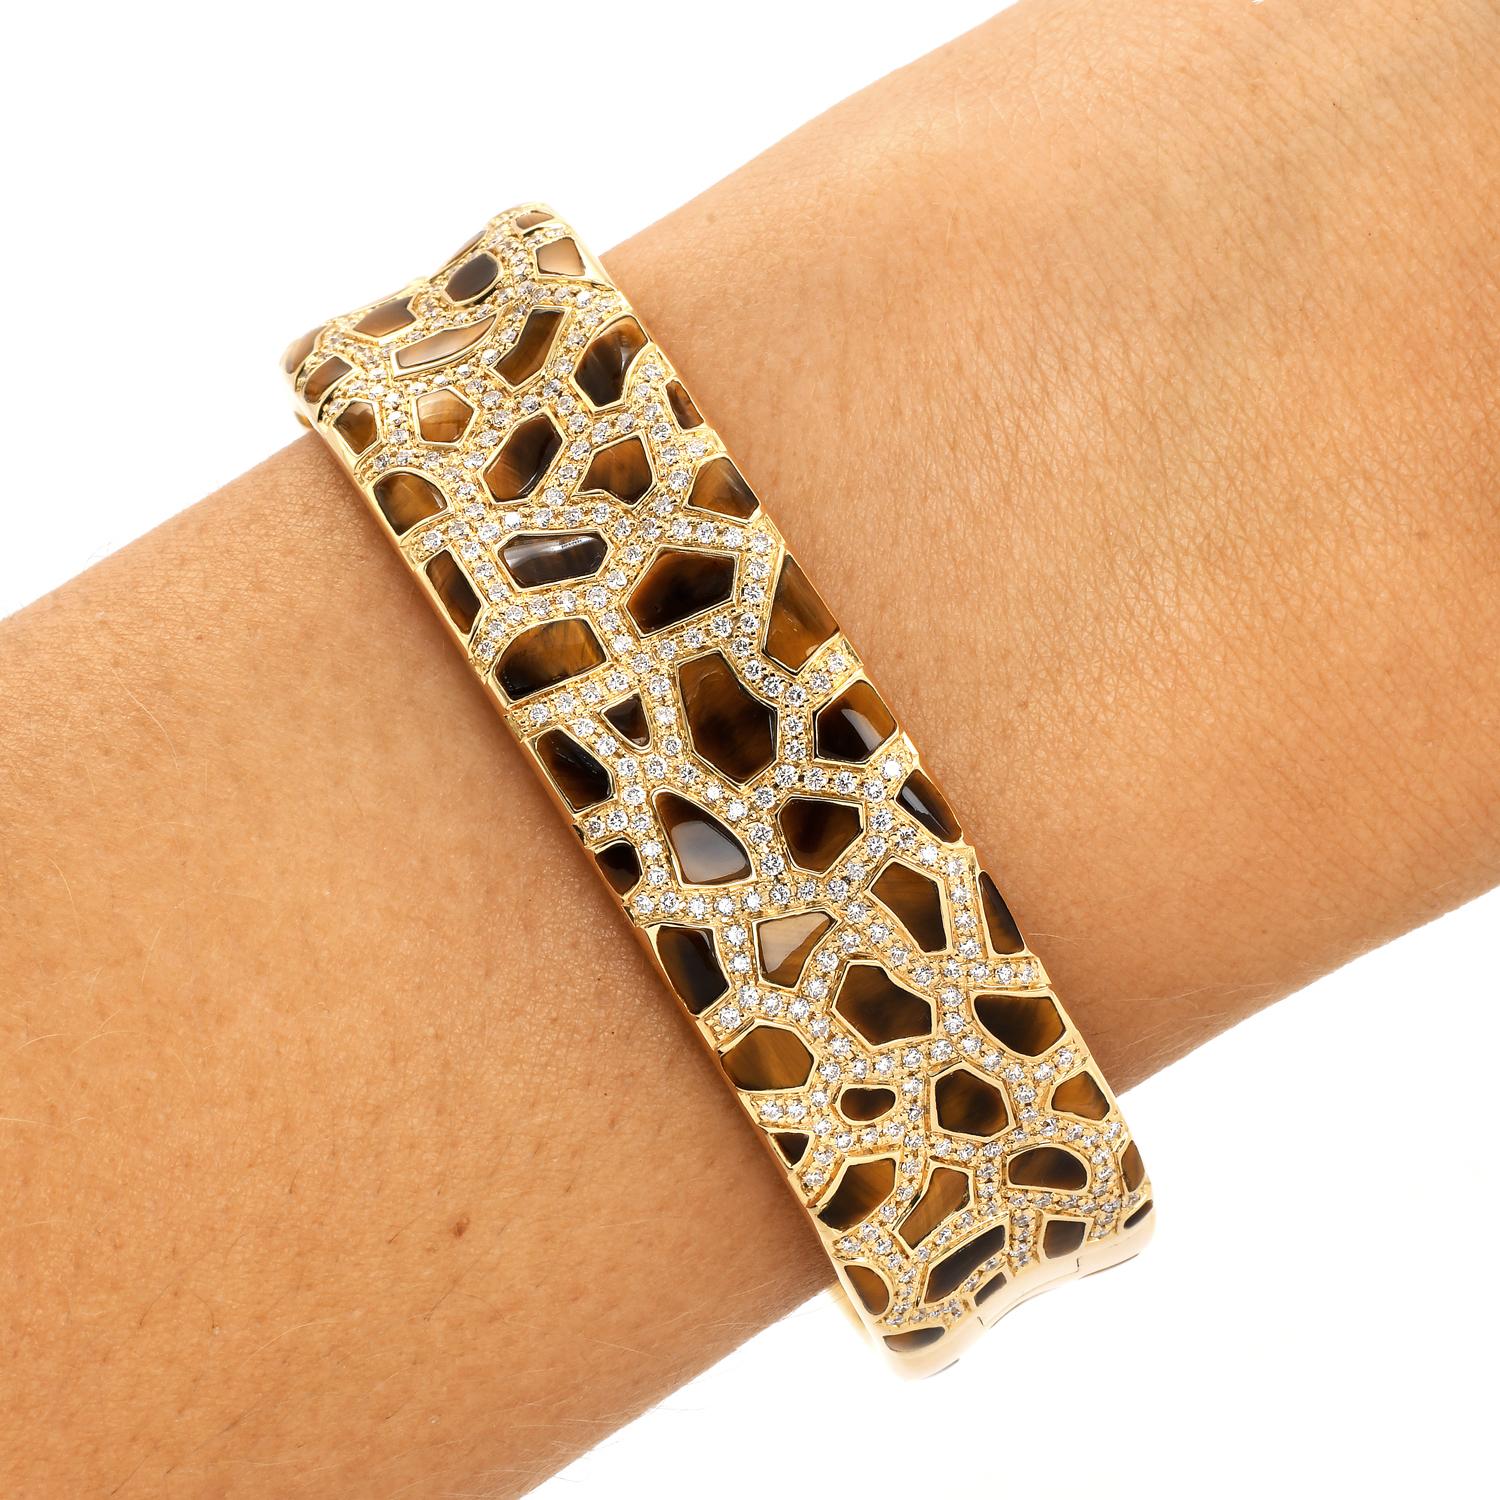 Roberto Coin Bracelet Girafe Animallier à diamants.

Ce magnifique bracelet de collection présente un contraste entre l'or, le diamant et la pierre précieuse Œil de tigre.

Un bracelet moyen de style éternel, réalisé en or jaune massif 18K avec une